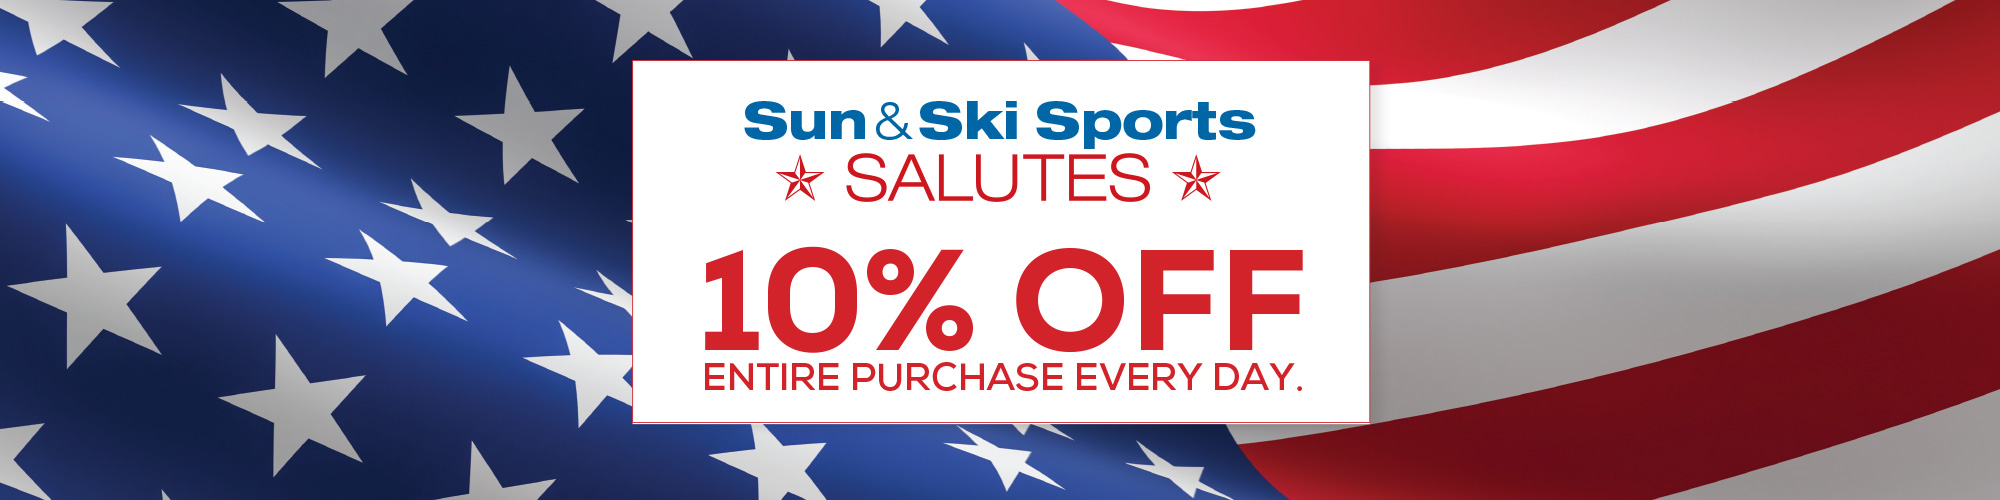 Sun & Ski Salutes - 10% off entire purchase